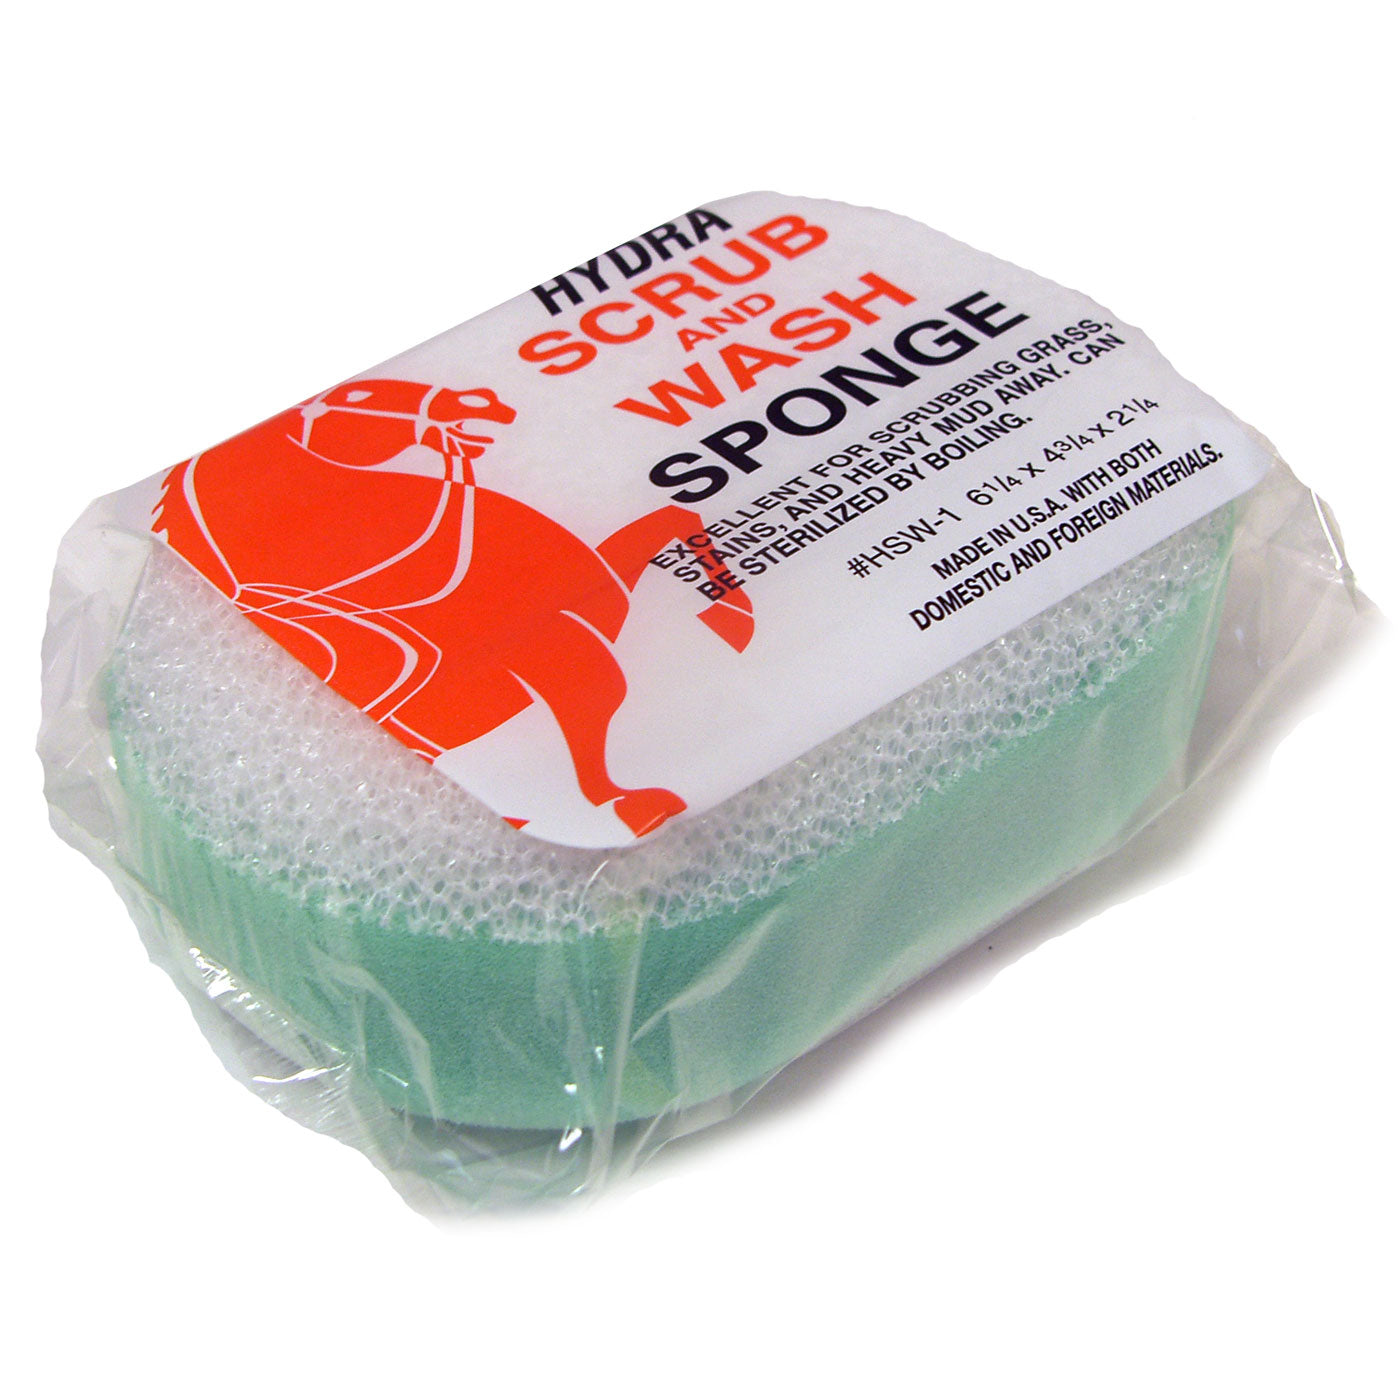 Hydra Scrub & Wash Sponge